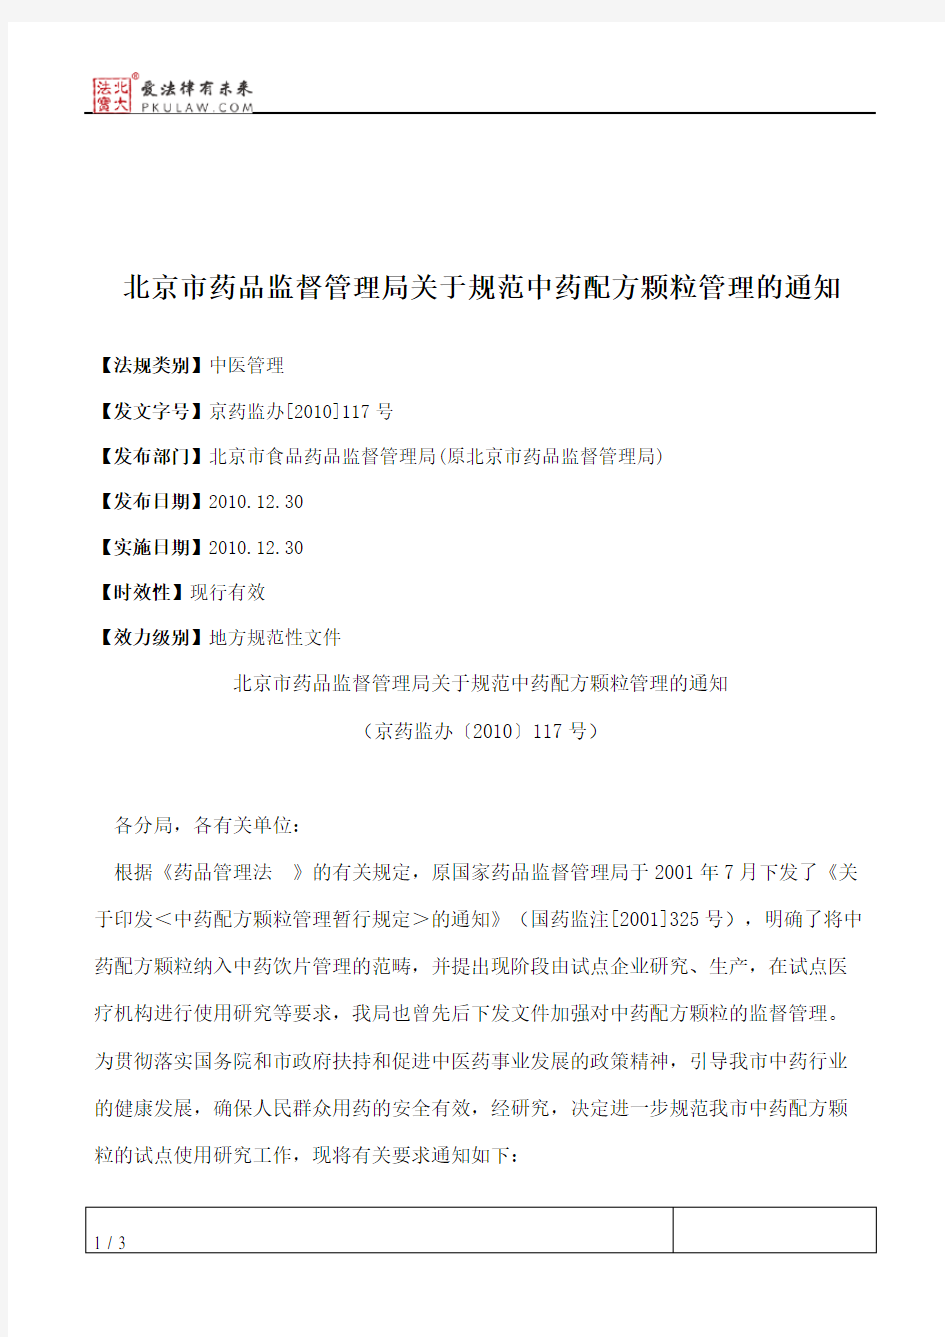 北京市药品监督管理局关于规范中药配方颗粒管理的通知